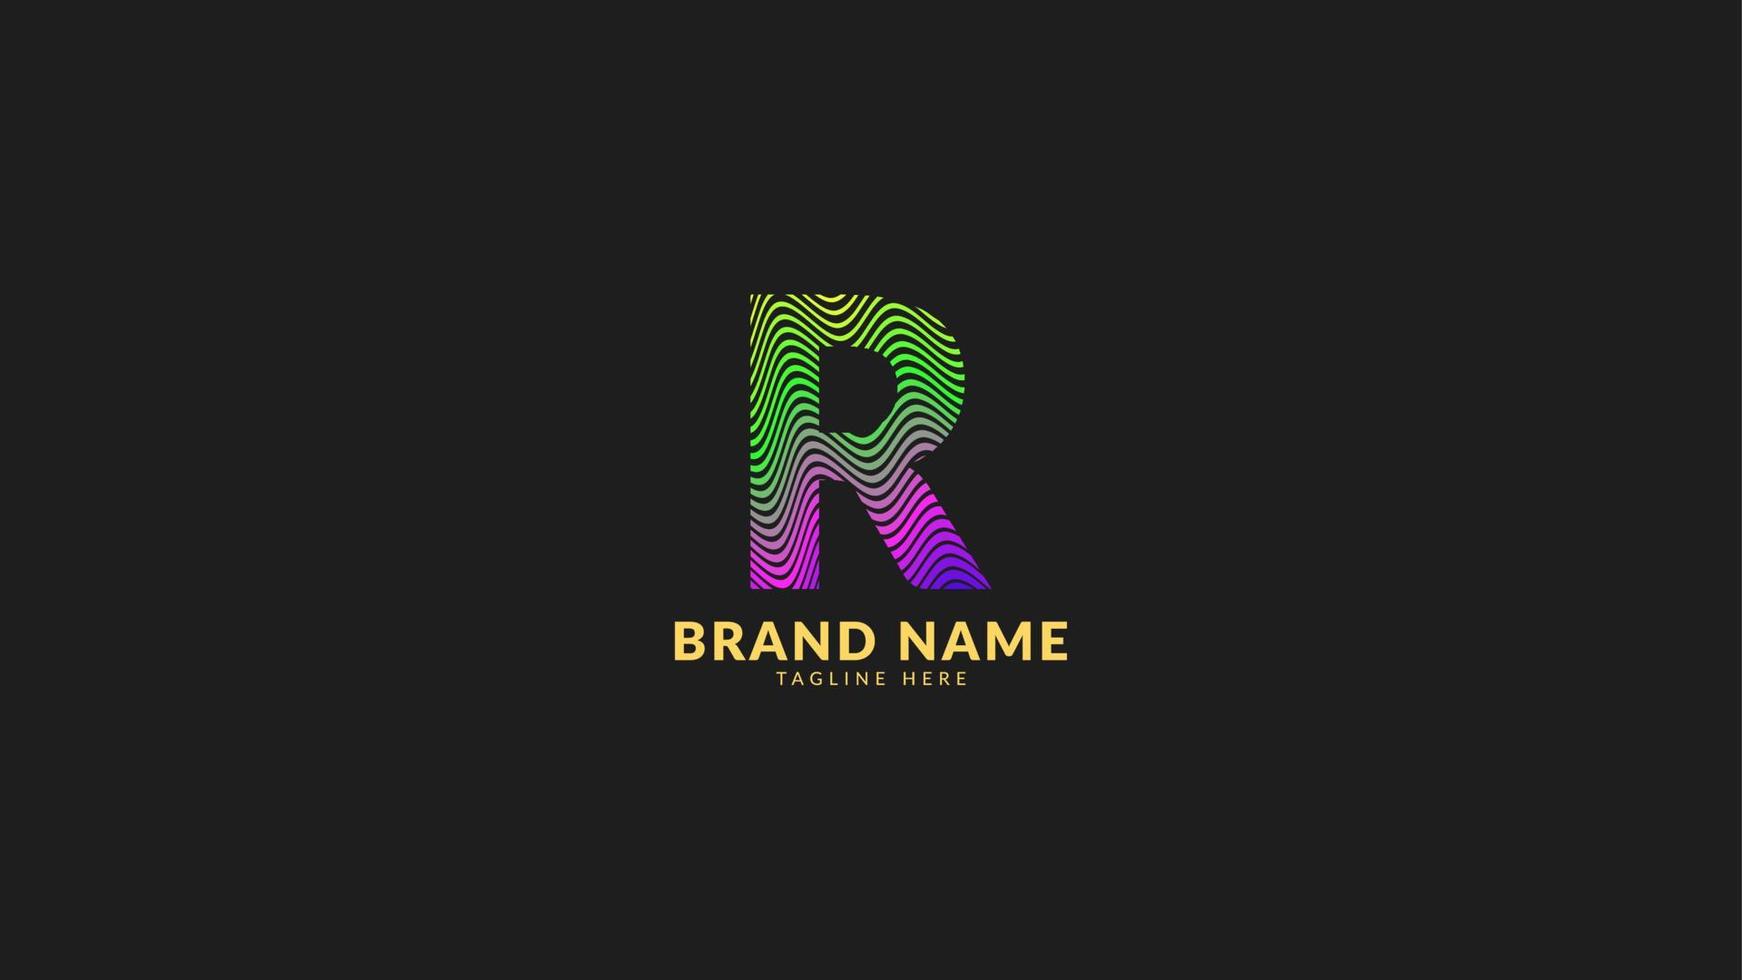 lettre r logo coloré abstrait arc-en-ciel ondulé pour une marque d'entreprise créative et innovante. élément de conception de vecteur d'impression ou de web